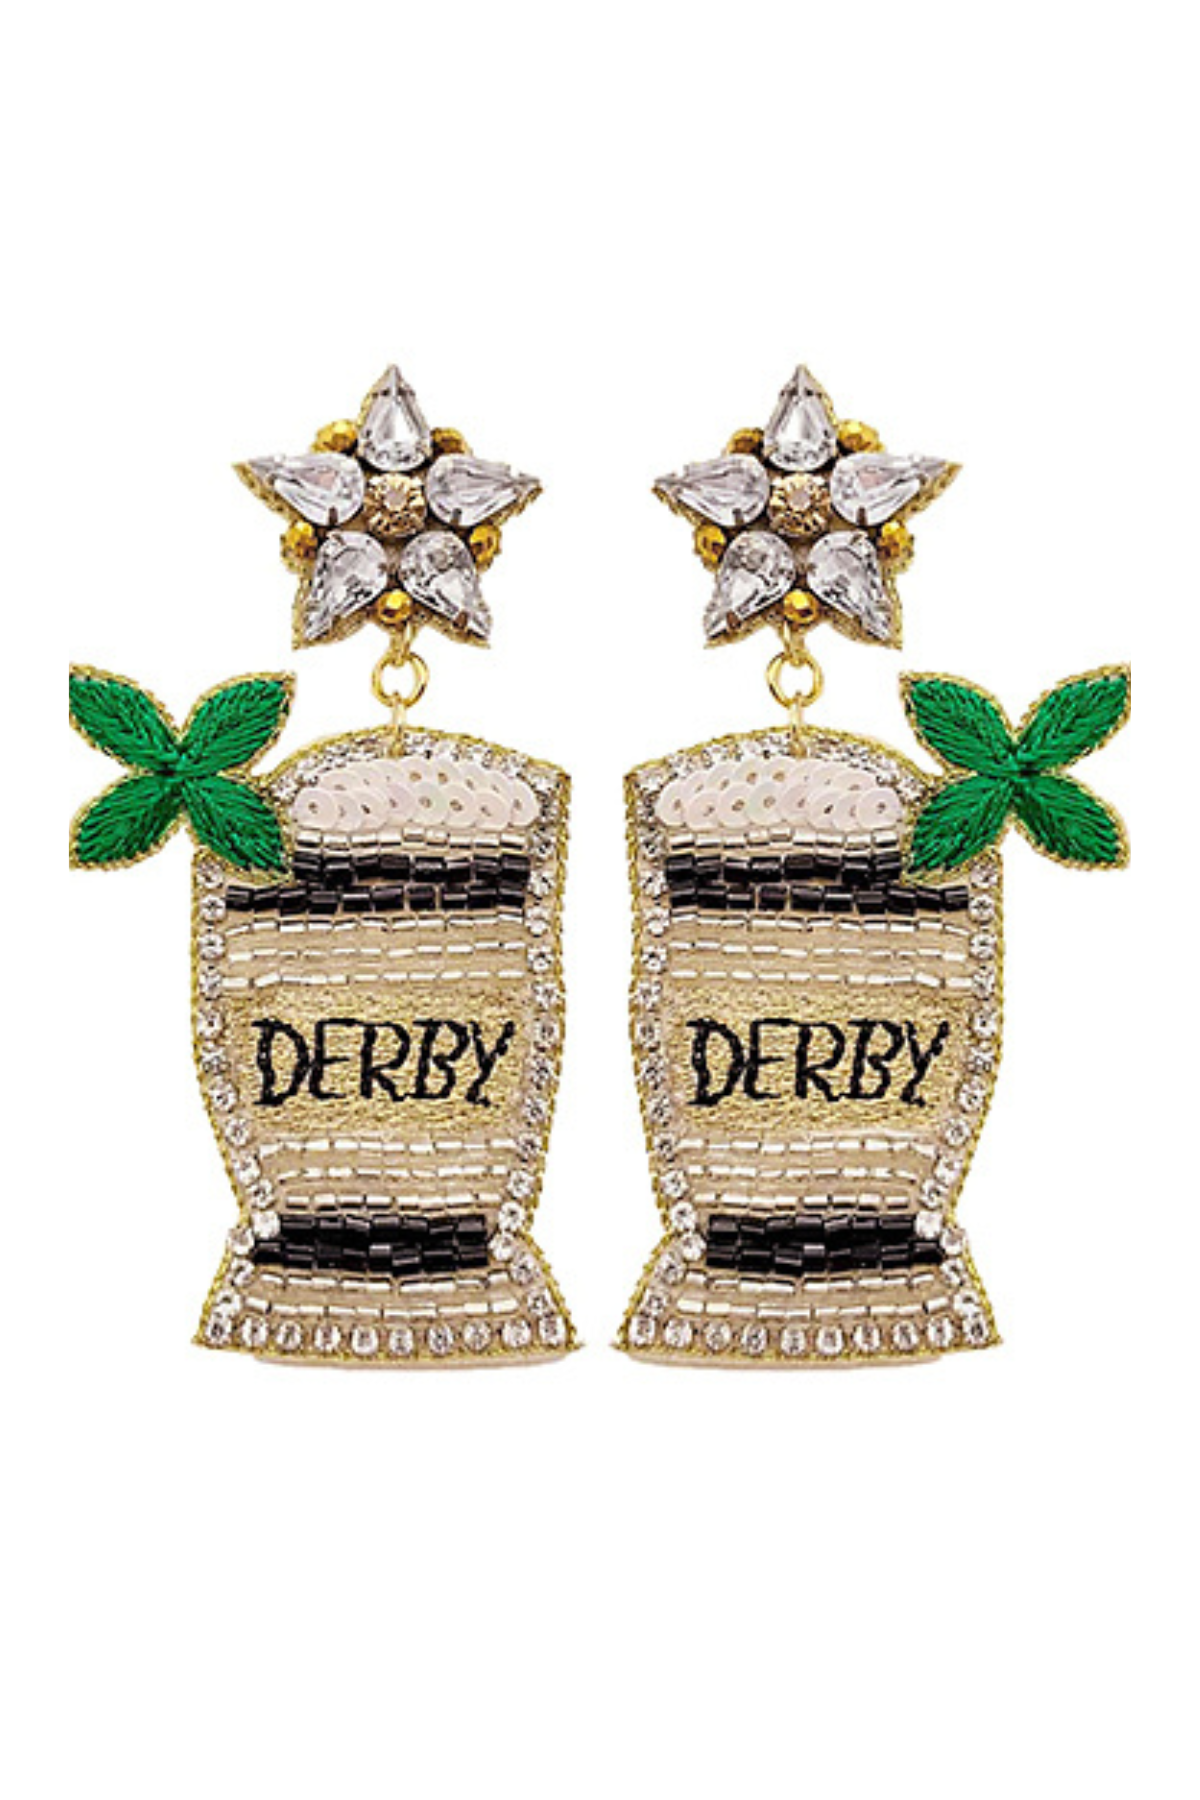 Derby Mint Julep Earrings